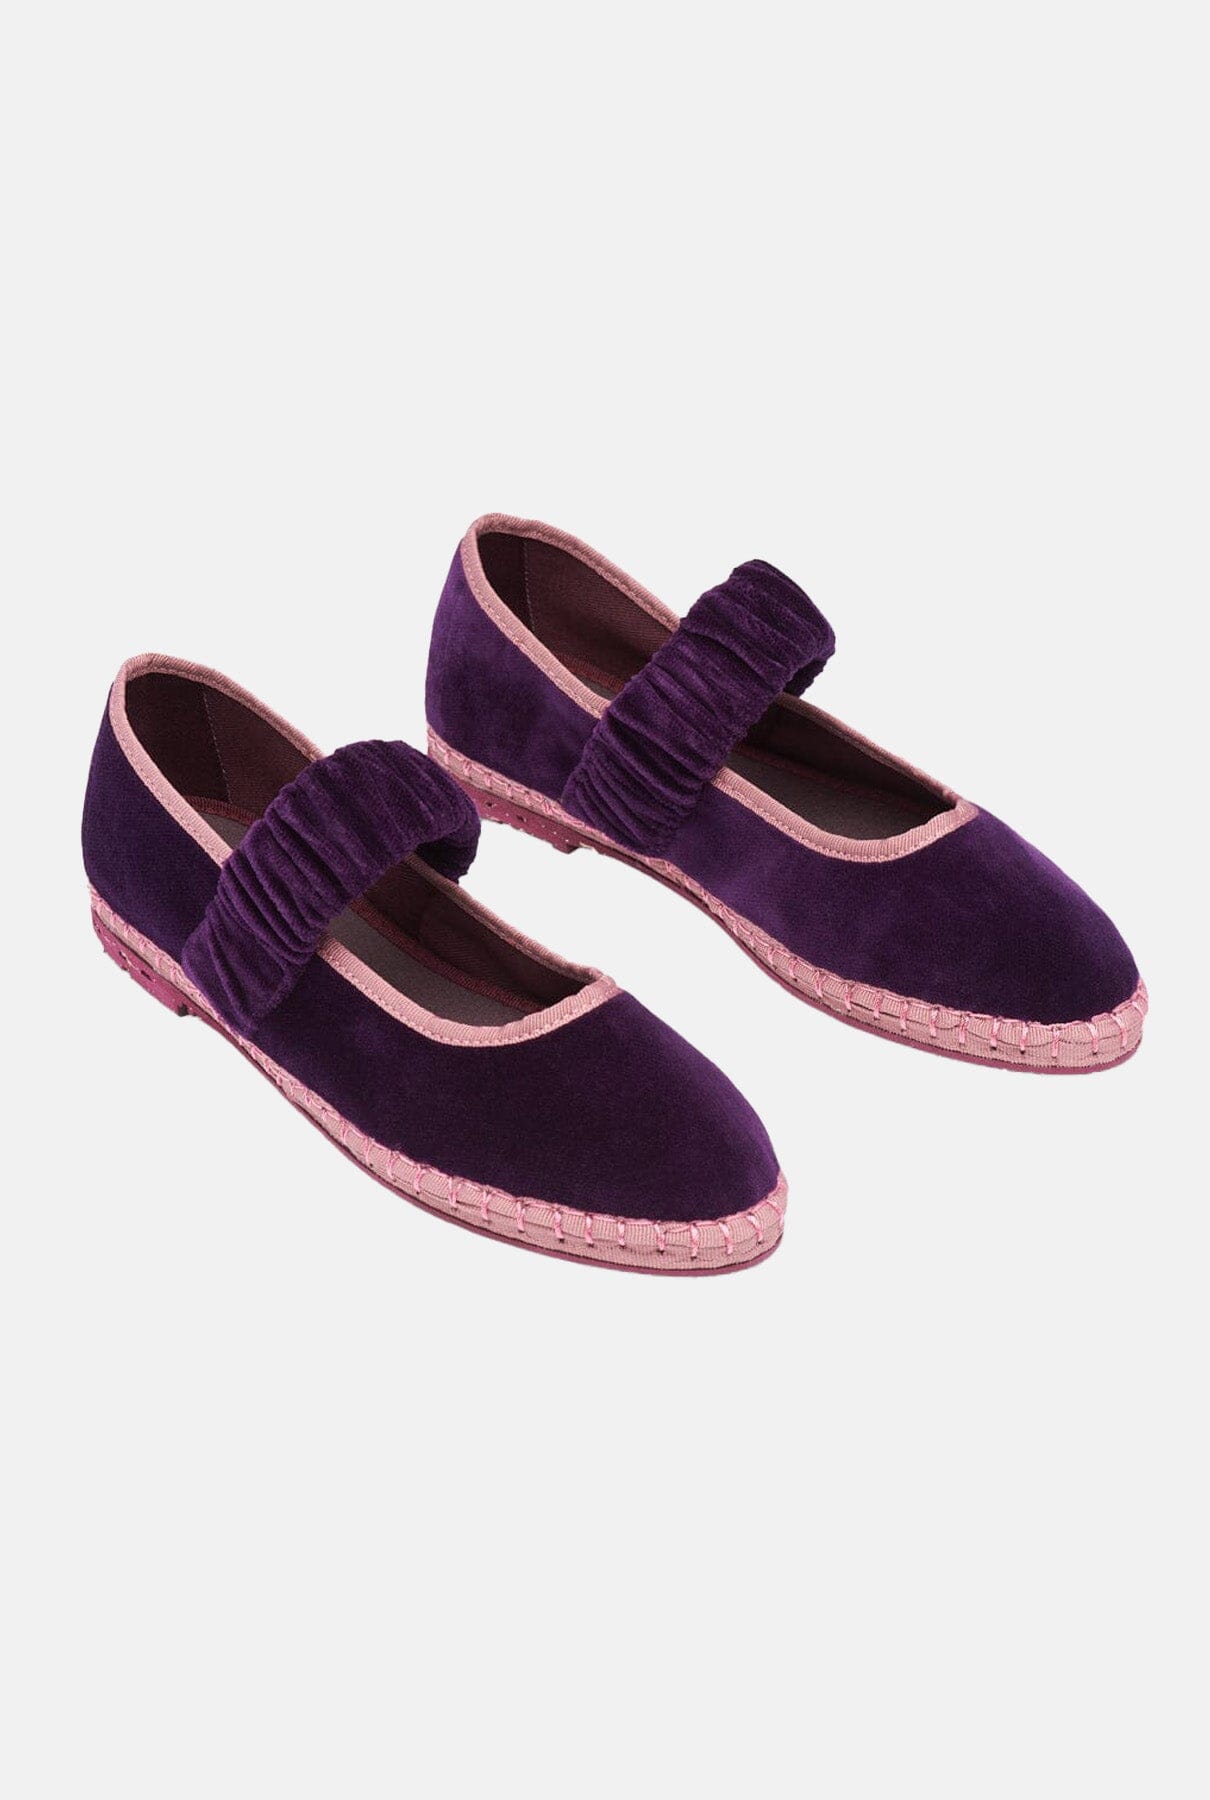 Mafalda Purple Flat shoes Flabelus 